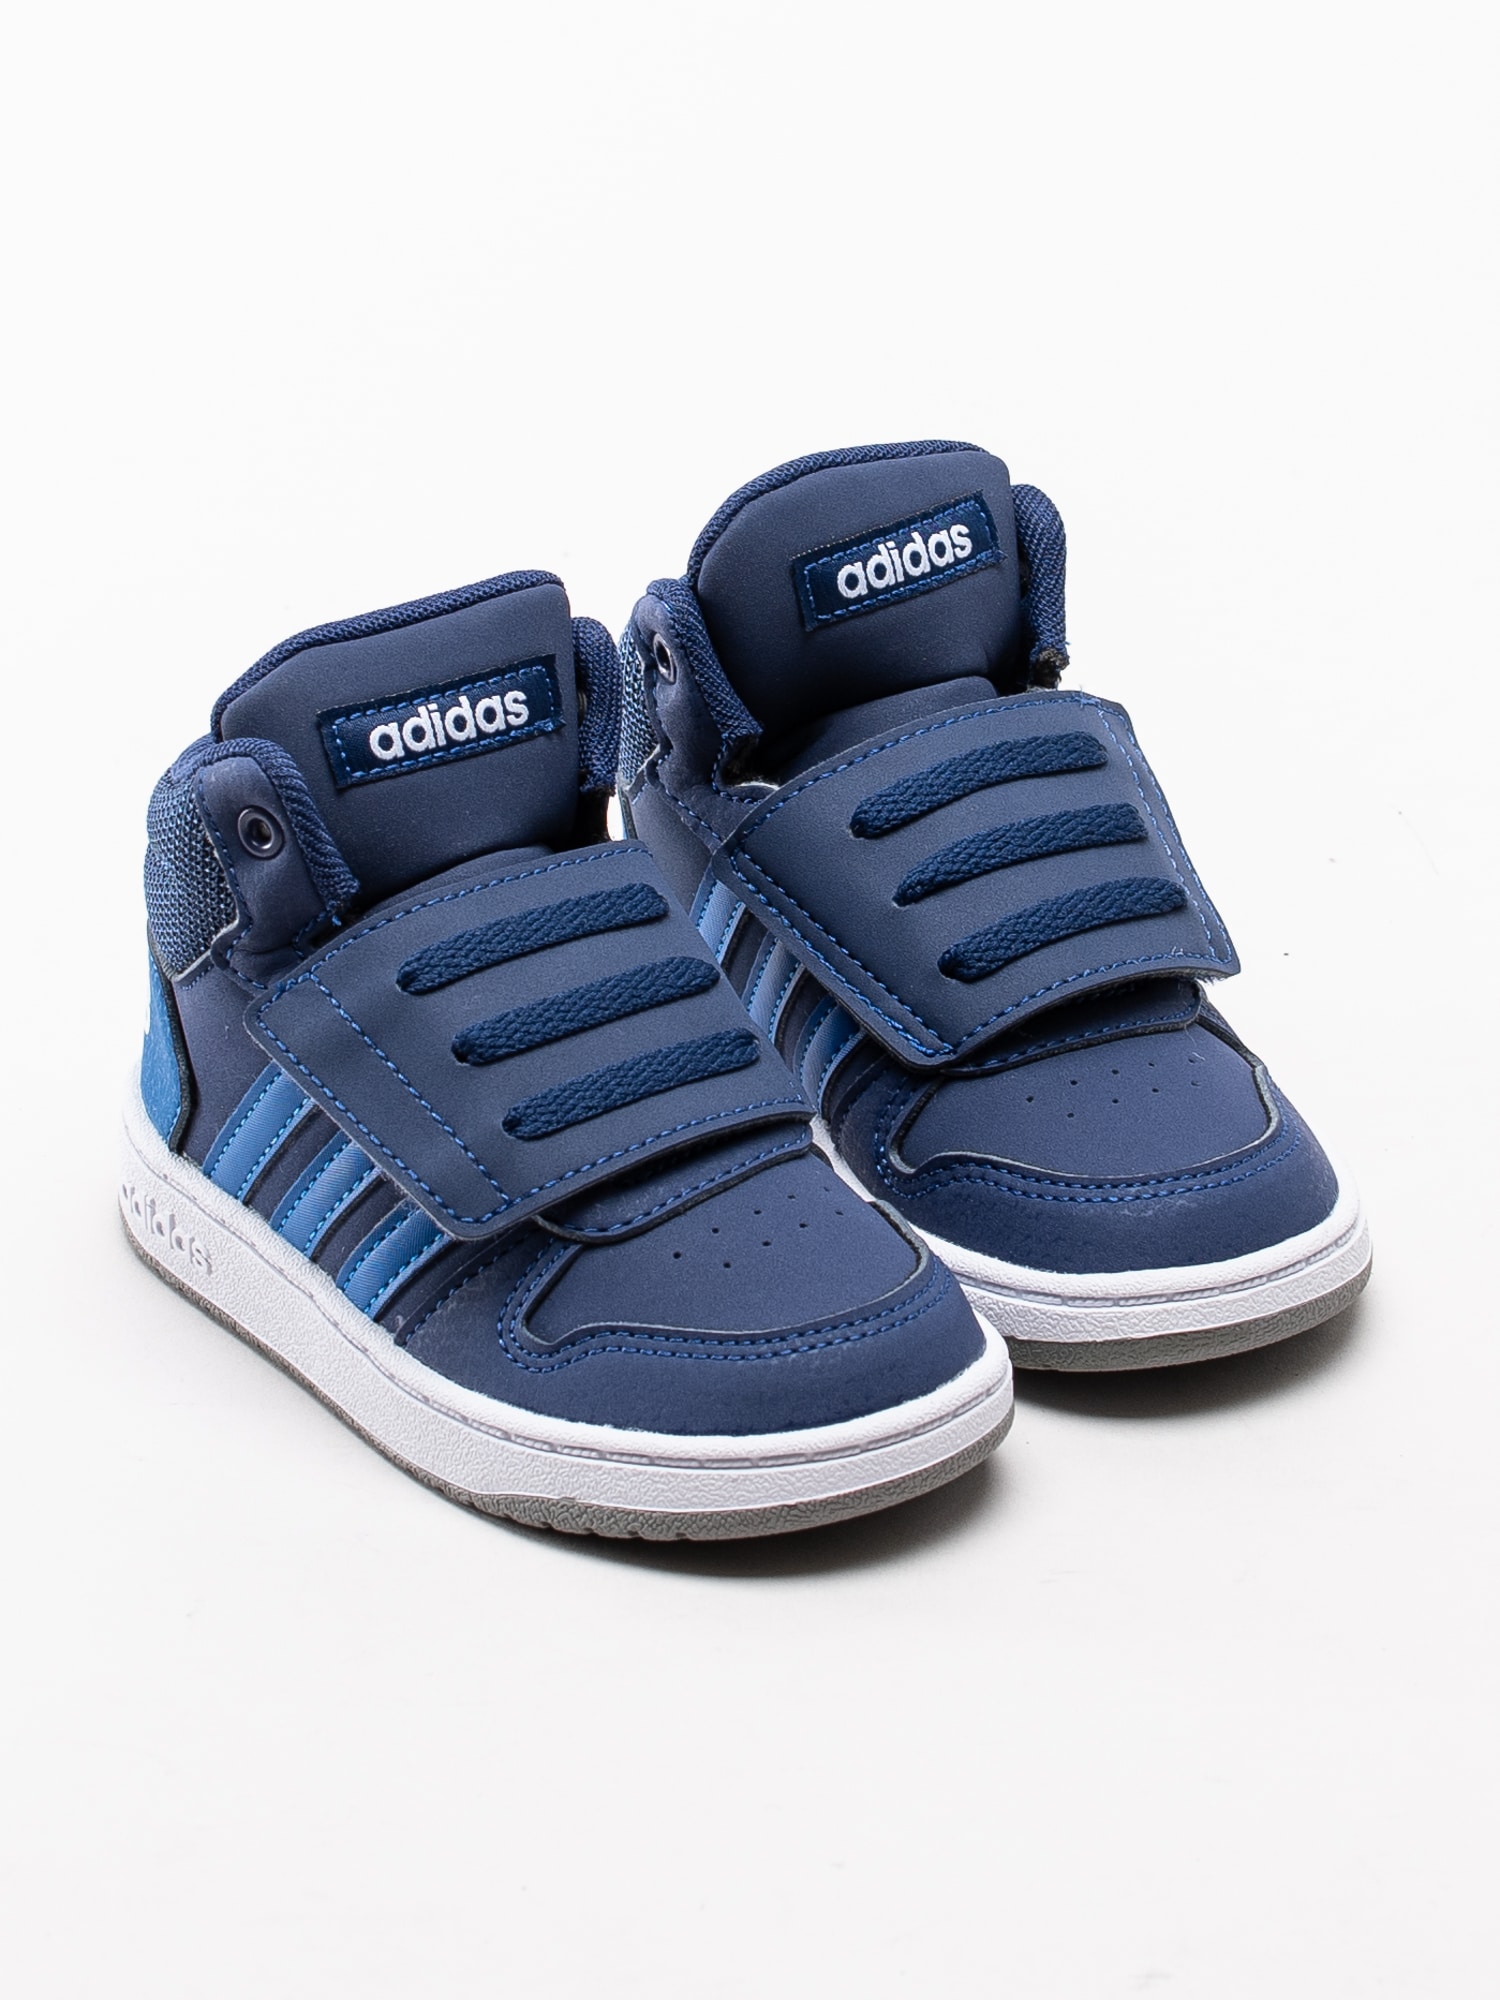 56193008 Adidas Hoops Mid 2.0 Infant EE6714 mörkblå höga sneakers för dem små med kardborre-3